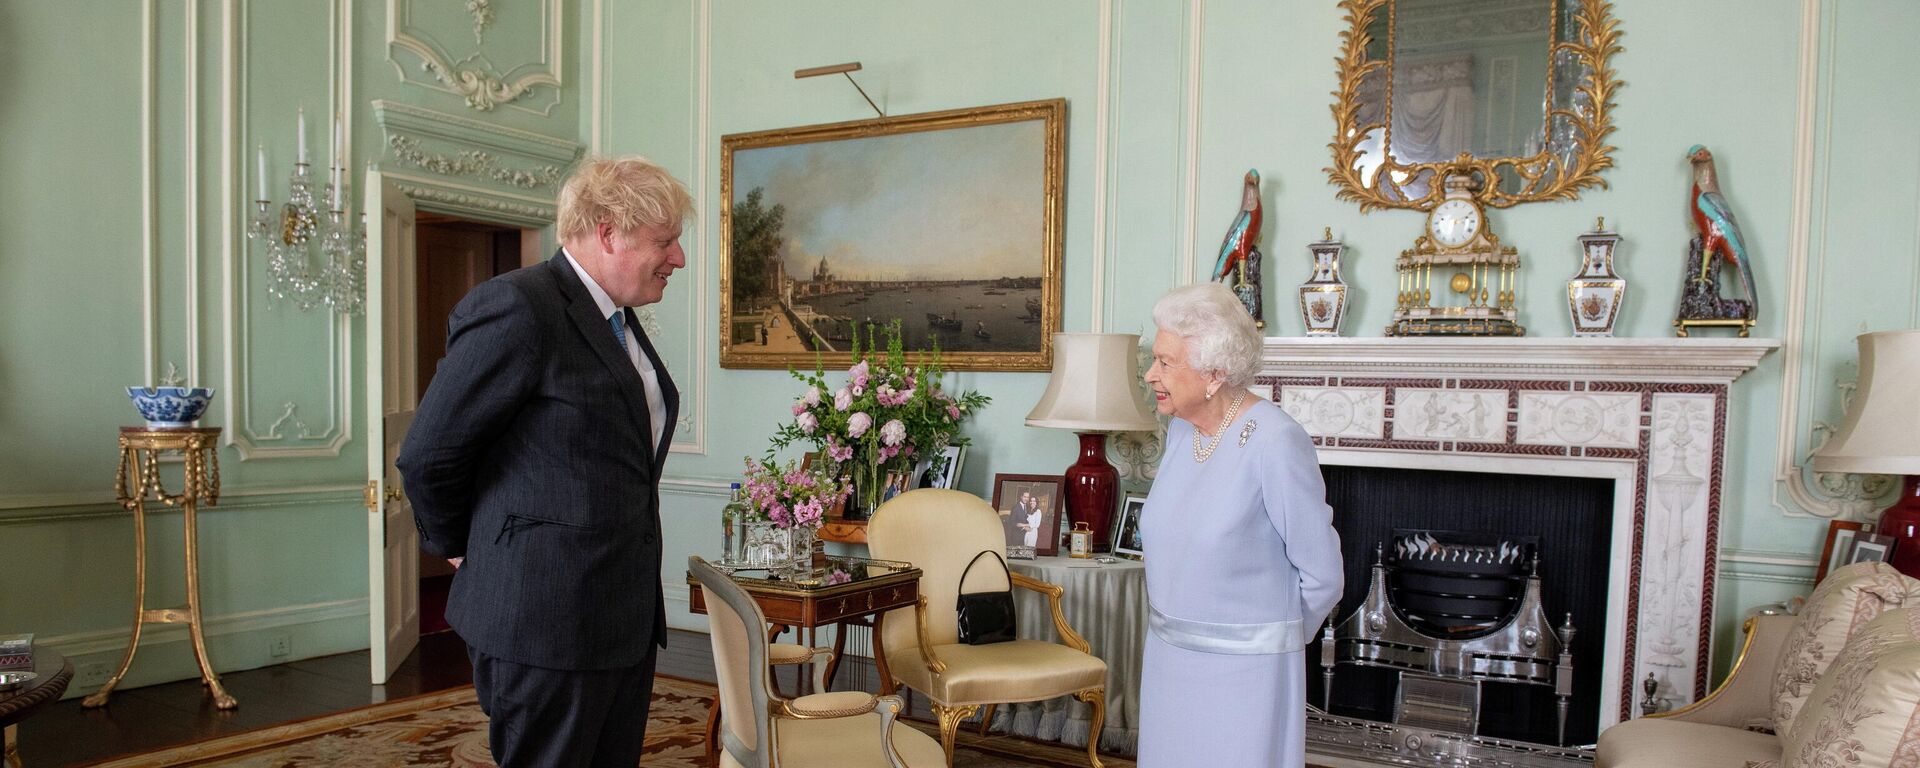 El primer ministro británico, Boris Johnson, se reúne con la reina Isabel II - Sputnik Mundo, 1920, 20.07.2021